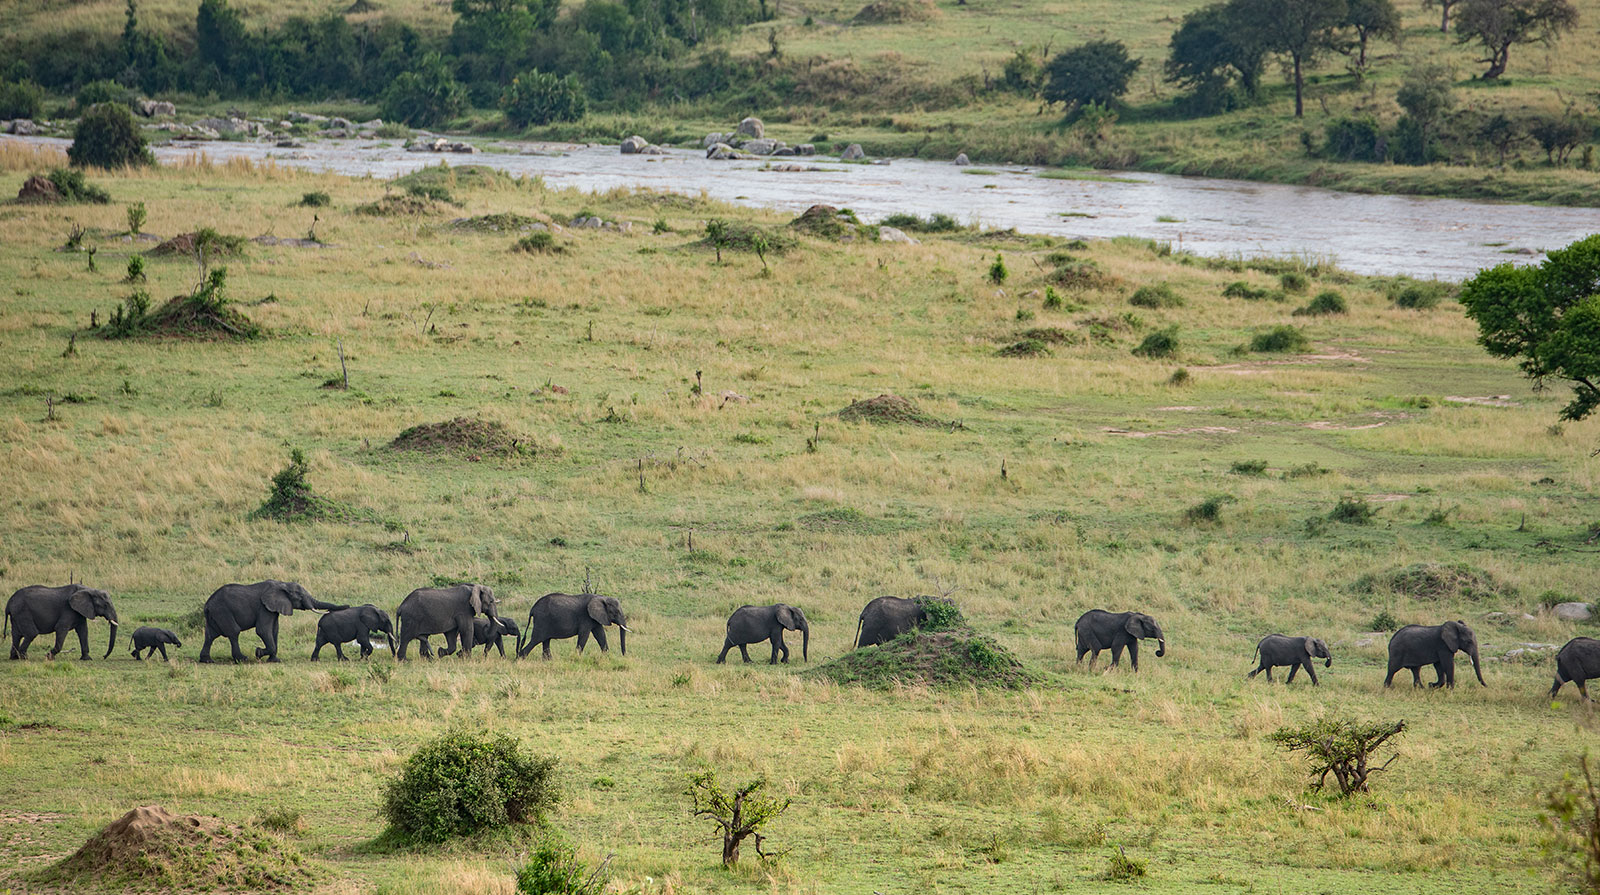 Mara River Post - Fauna selvatica abbondante